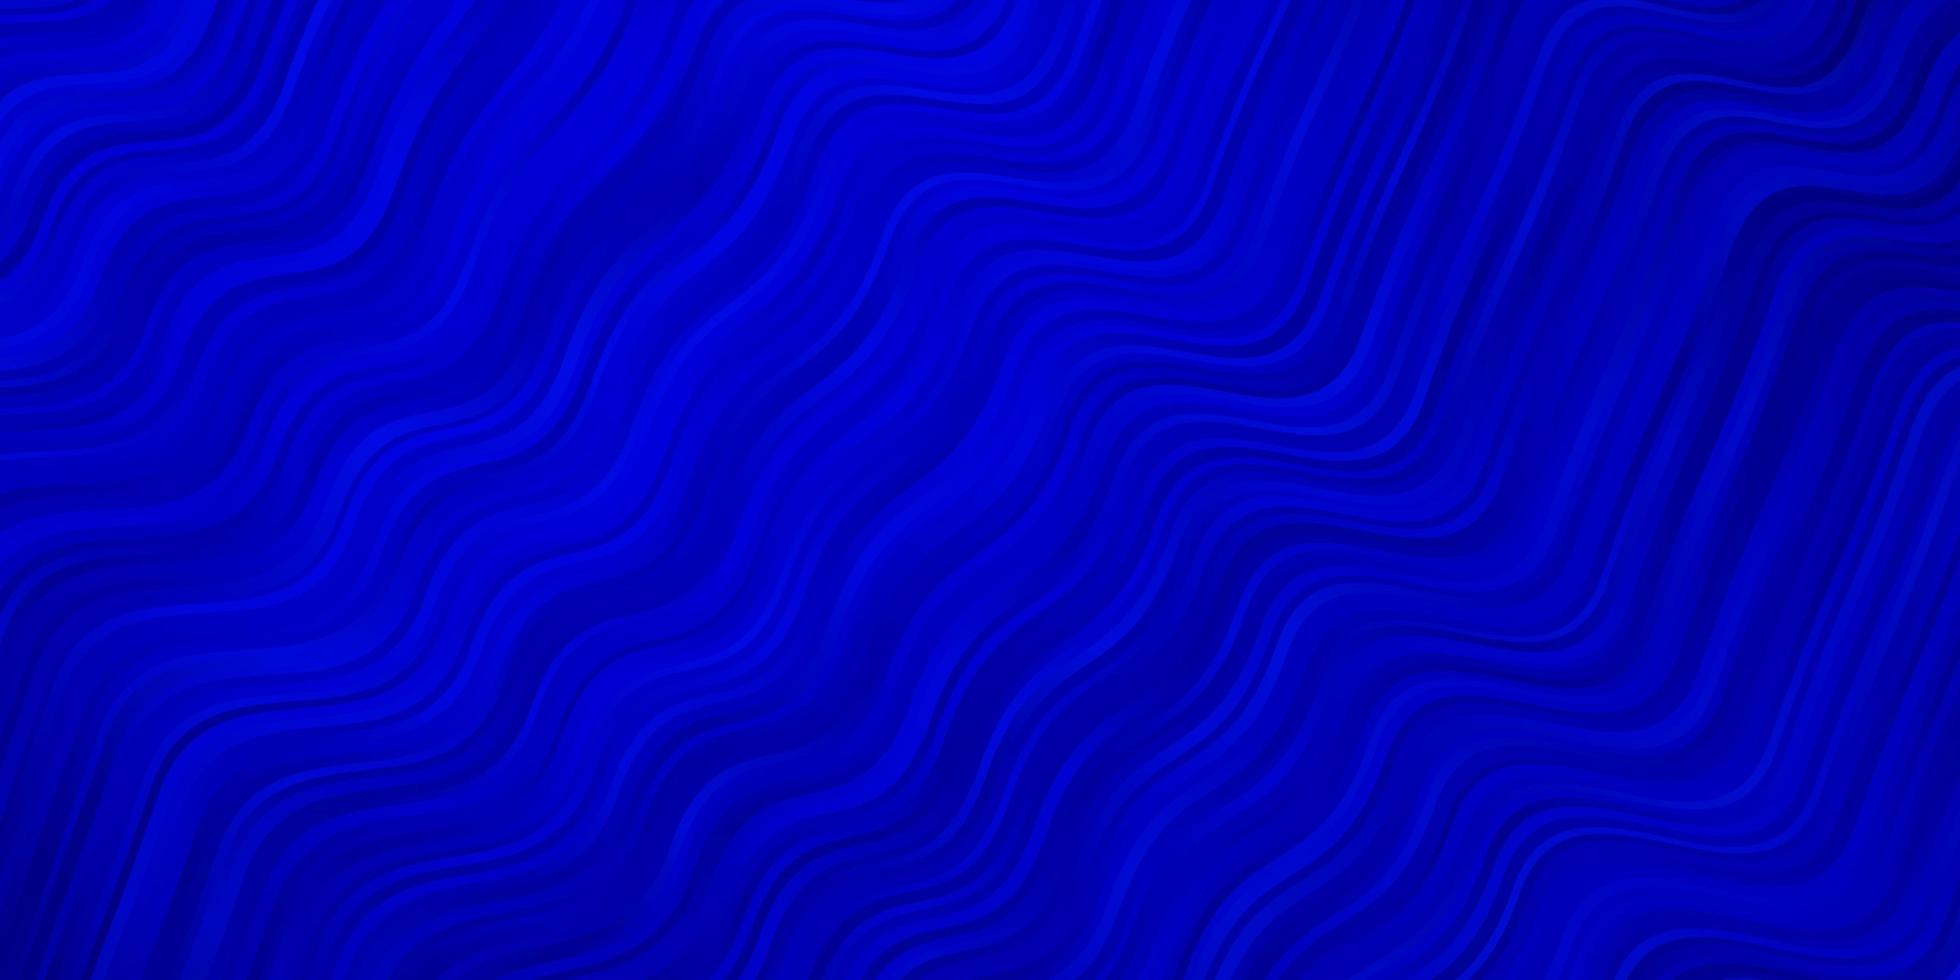 sfondo vettoriale blu scuro con curve nuovissima illustrazione colorata con linee piegate design intelligente per le tue promozioni